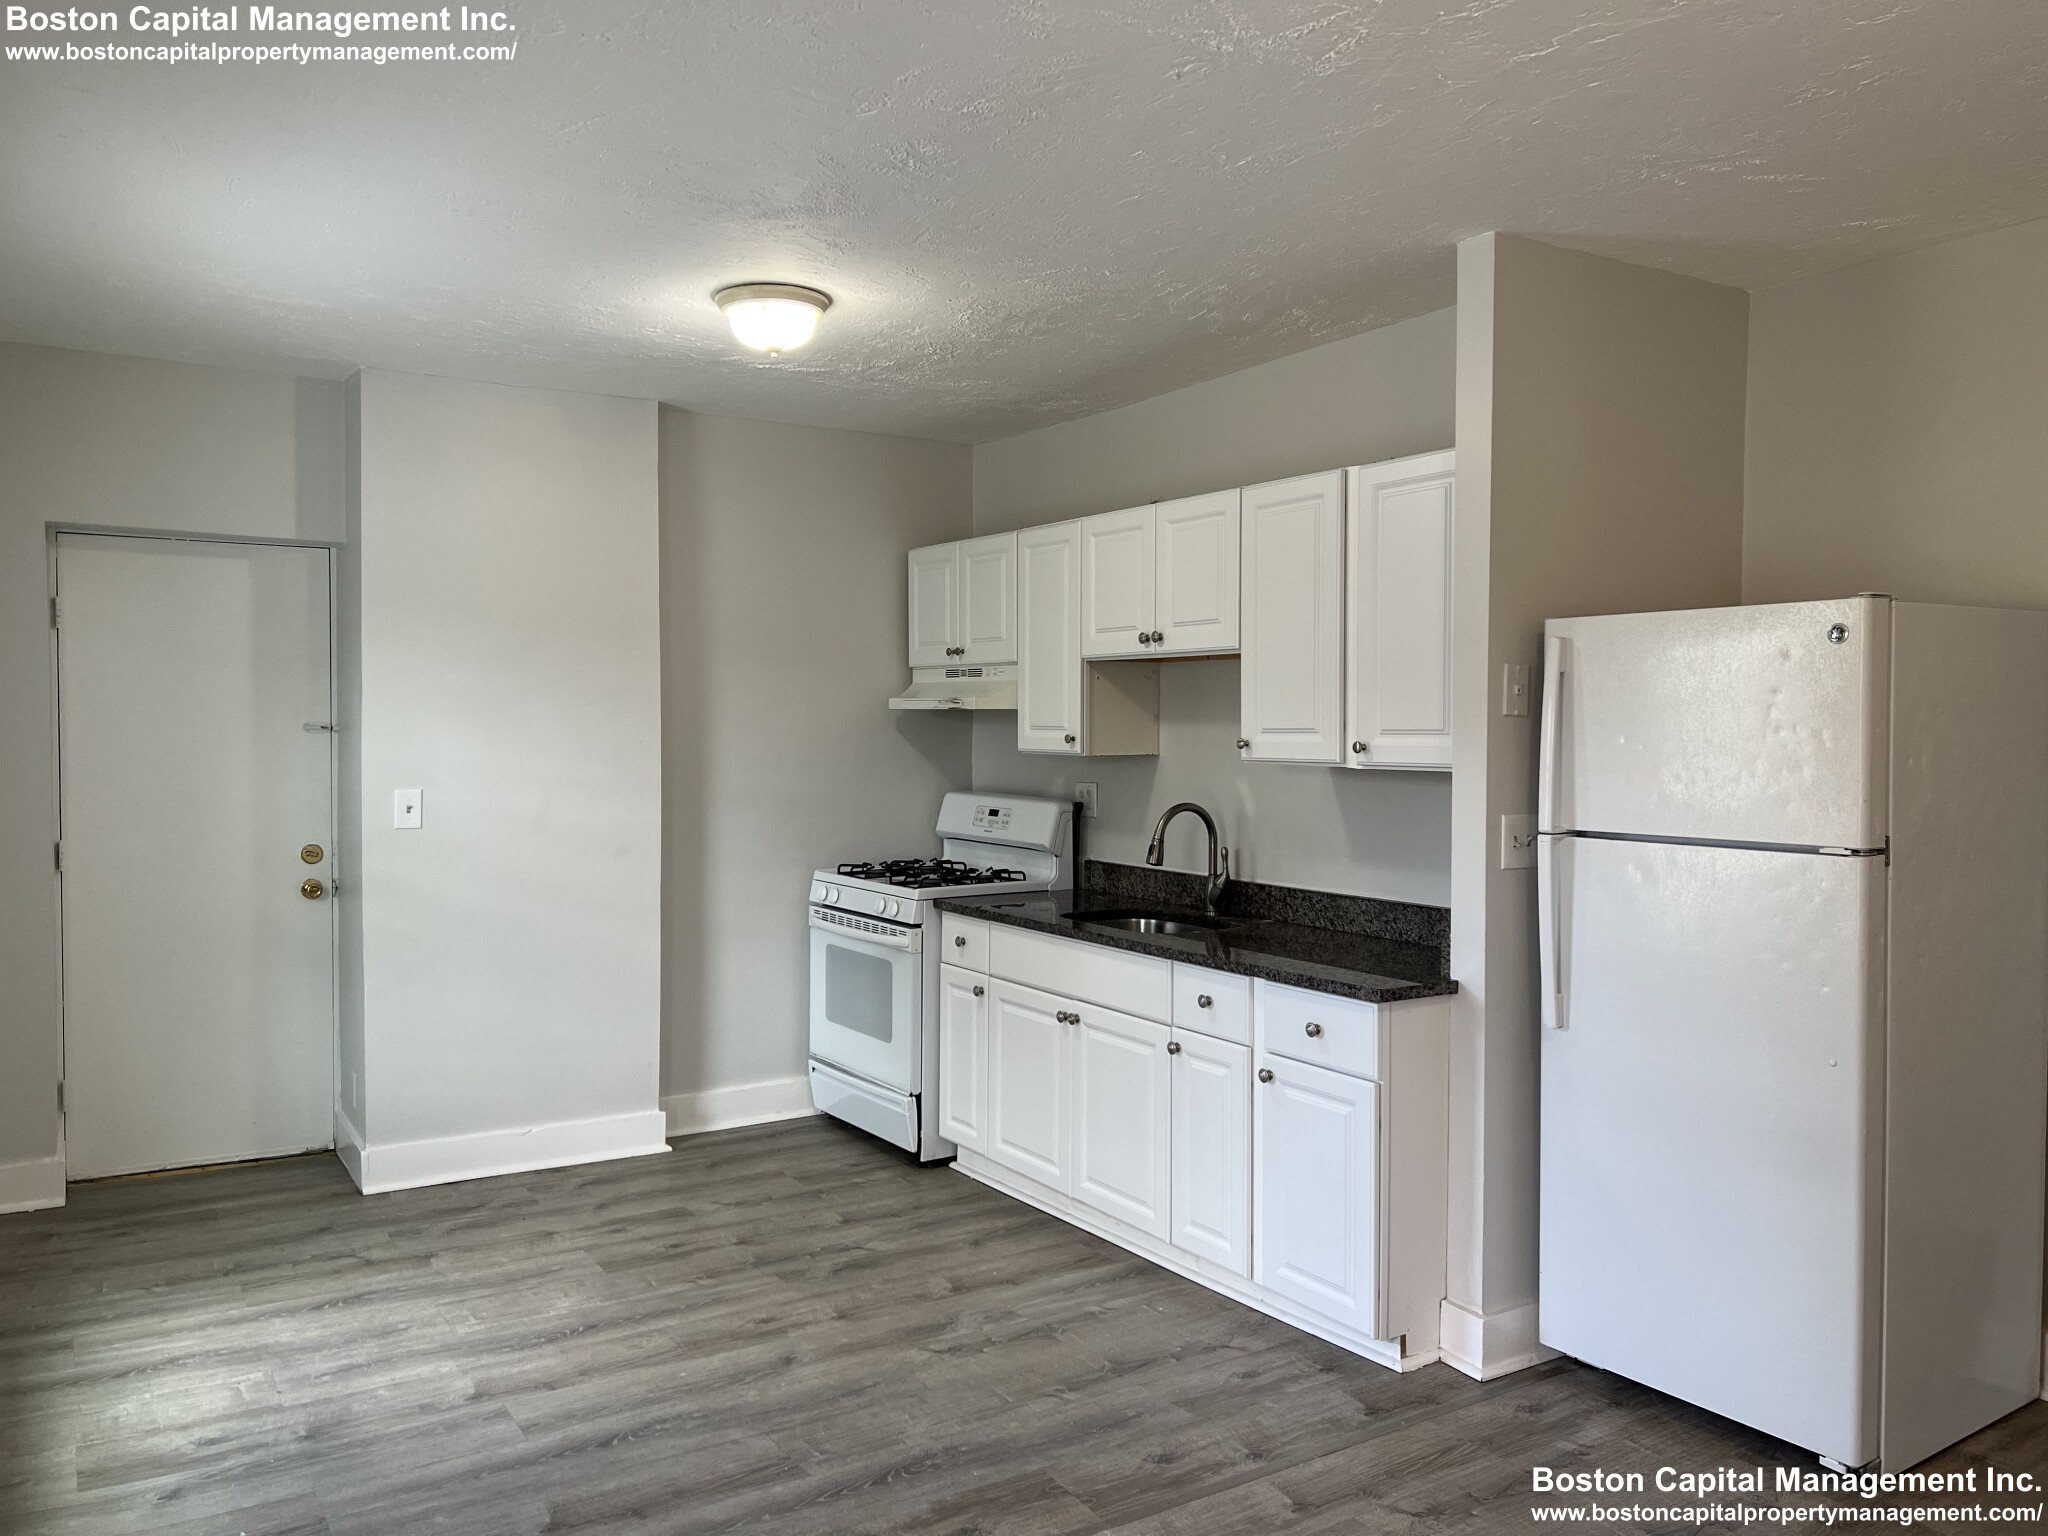 Photos of apartment on Calhoun,Everett MA 02149